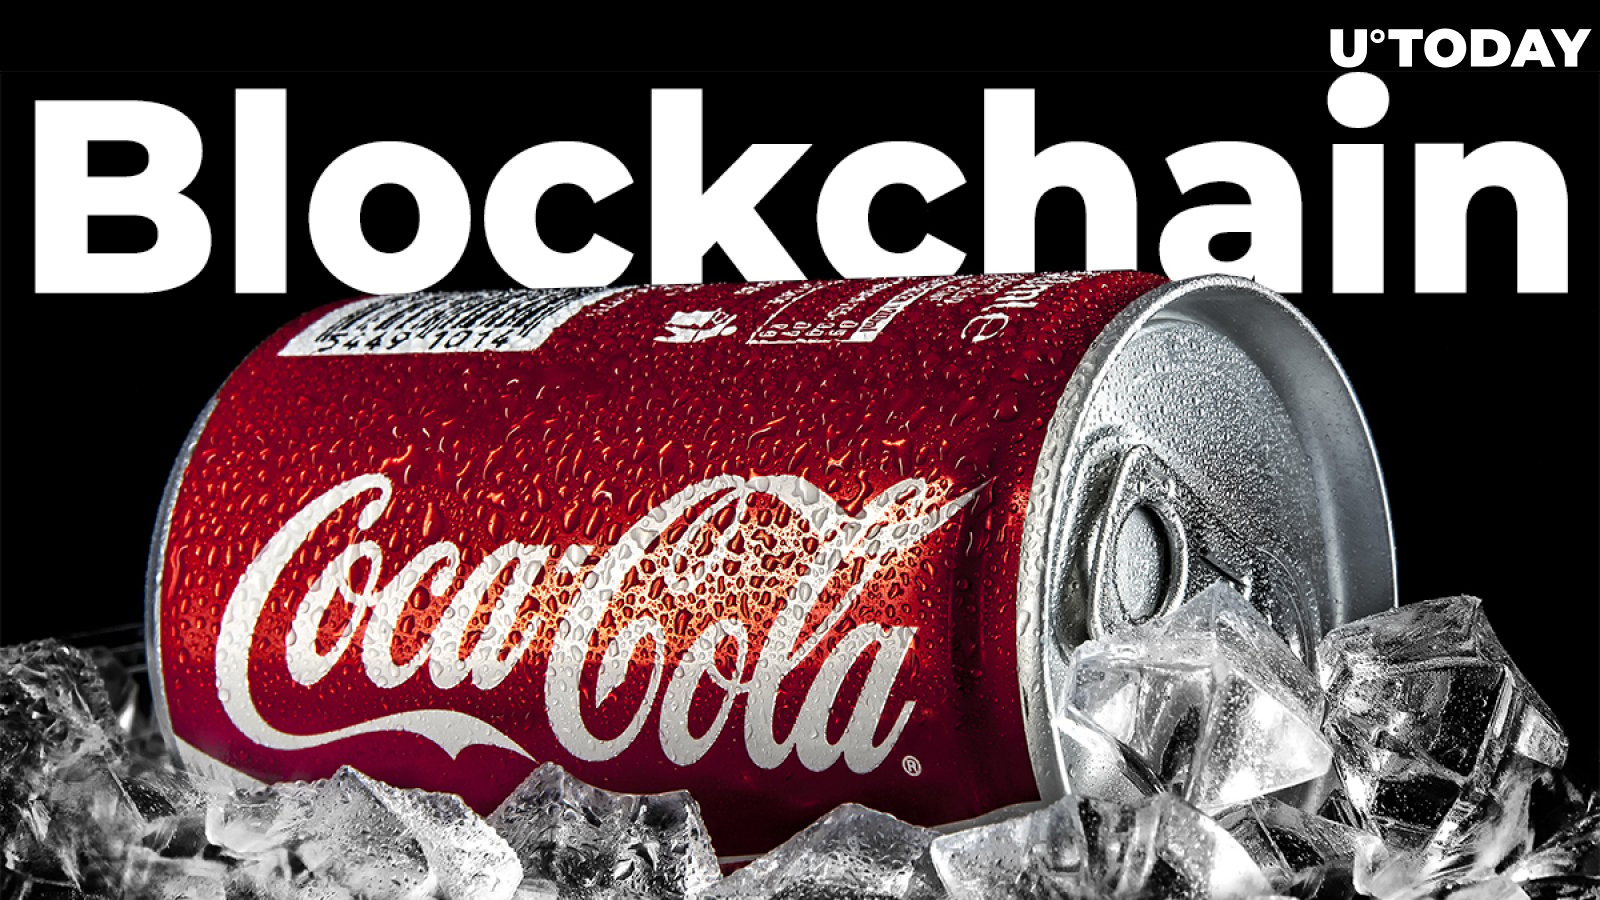 Coca-Cola Embraces Blockchain Technology Developed by SAP